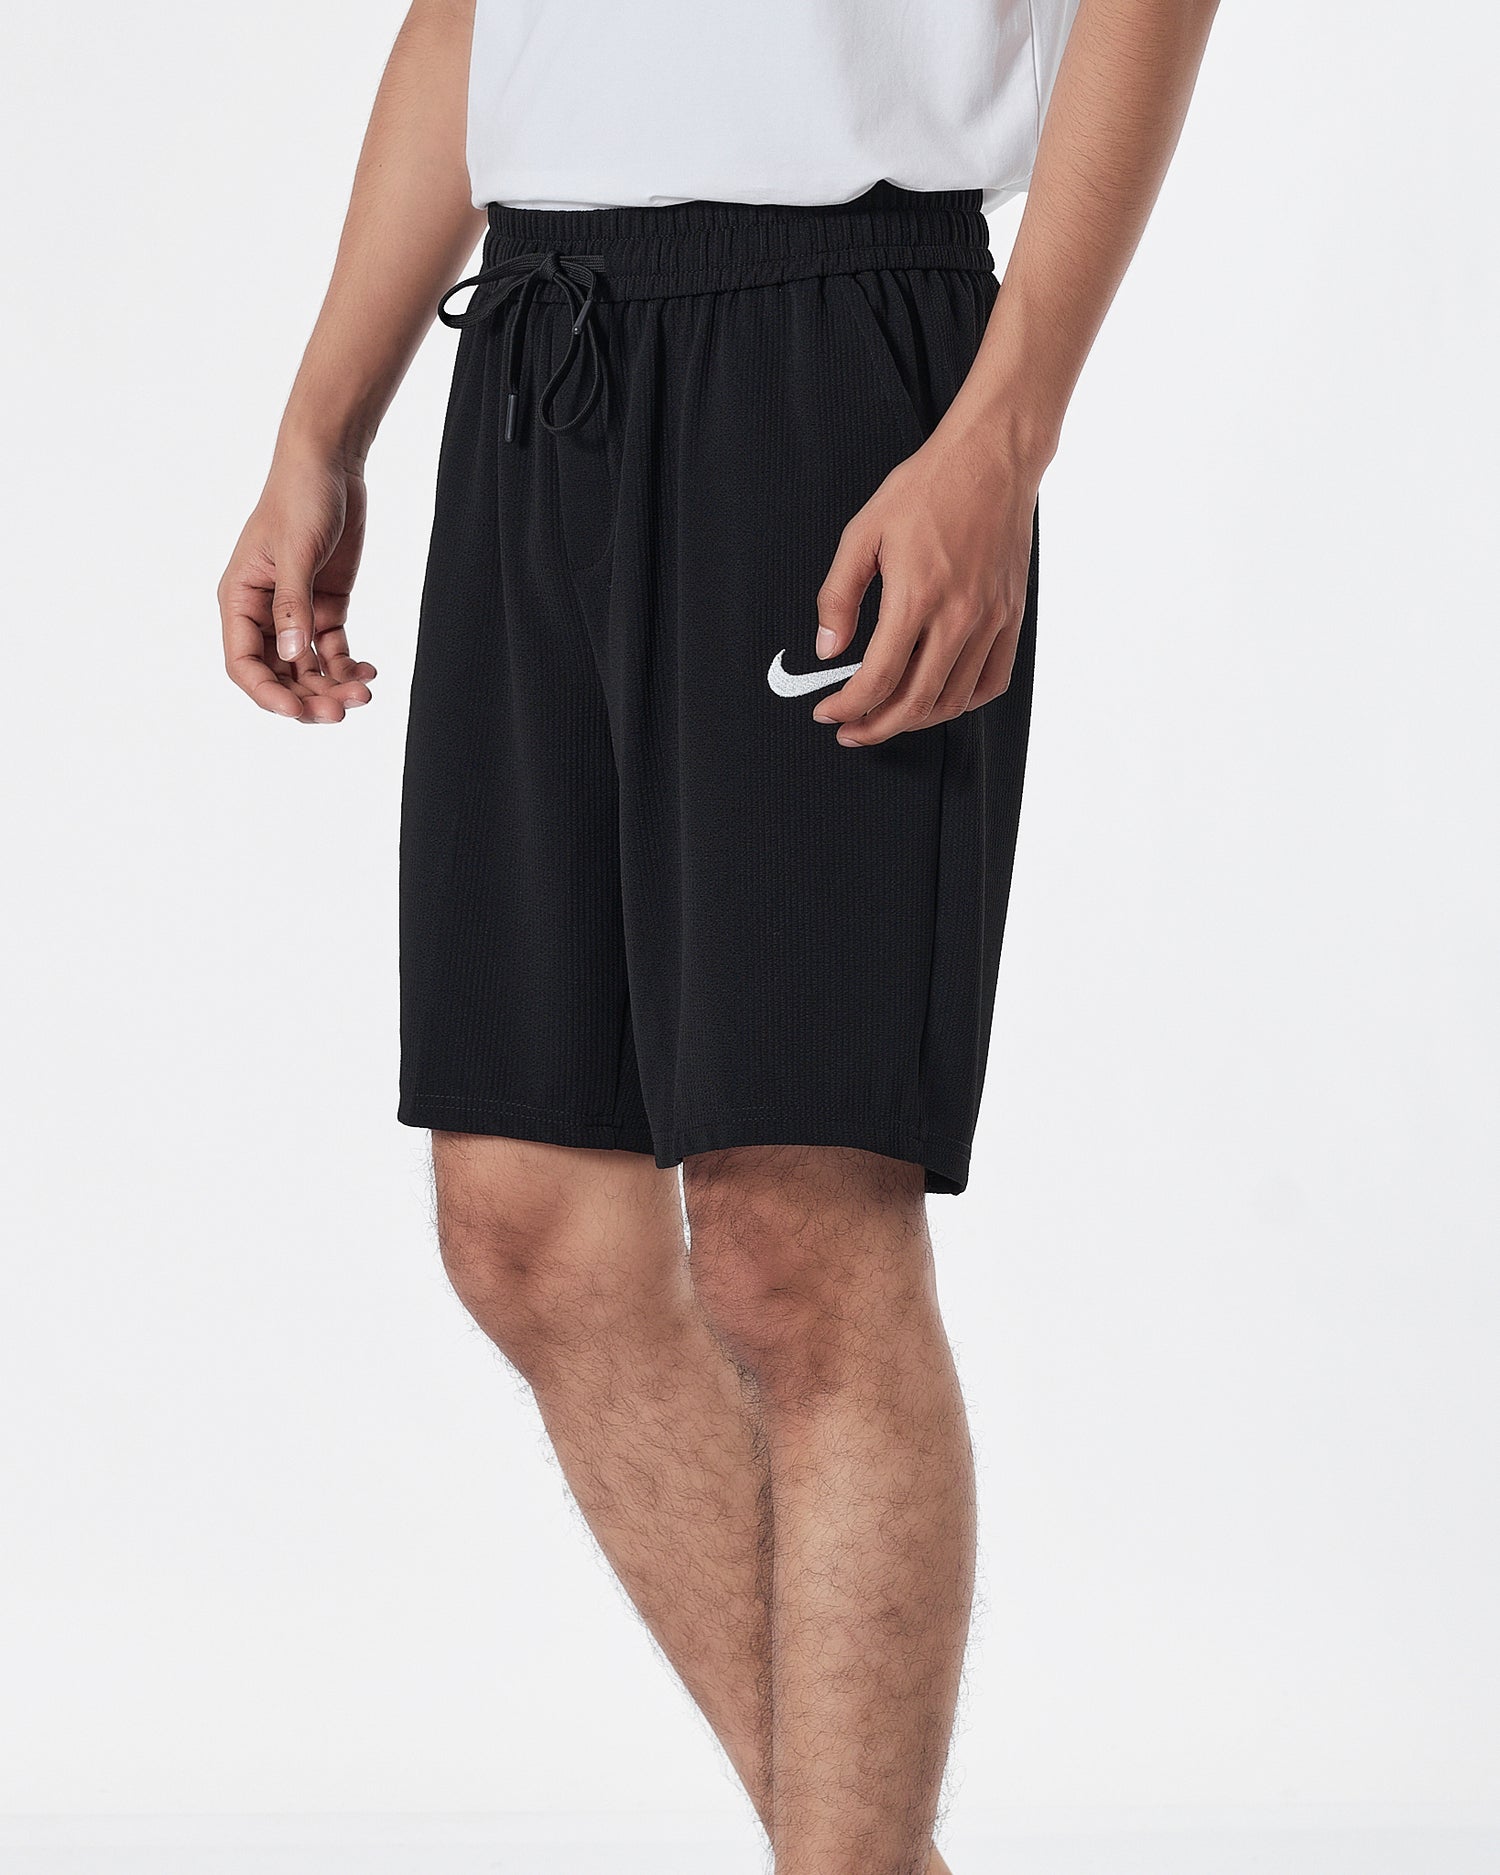 NIK Logo Embroidered Men Black Track Shorts 12.90